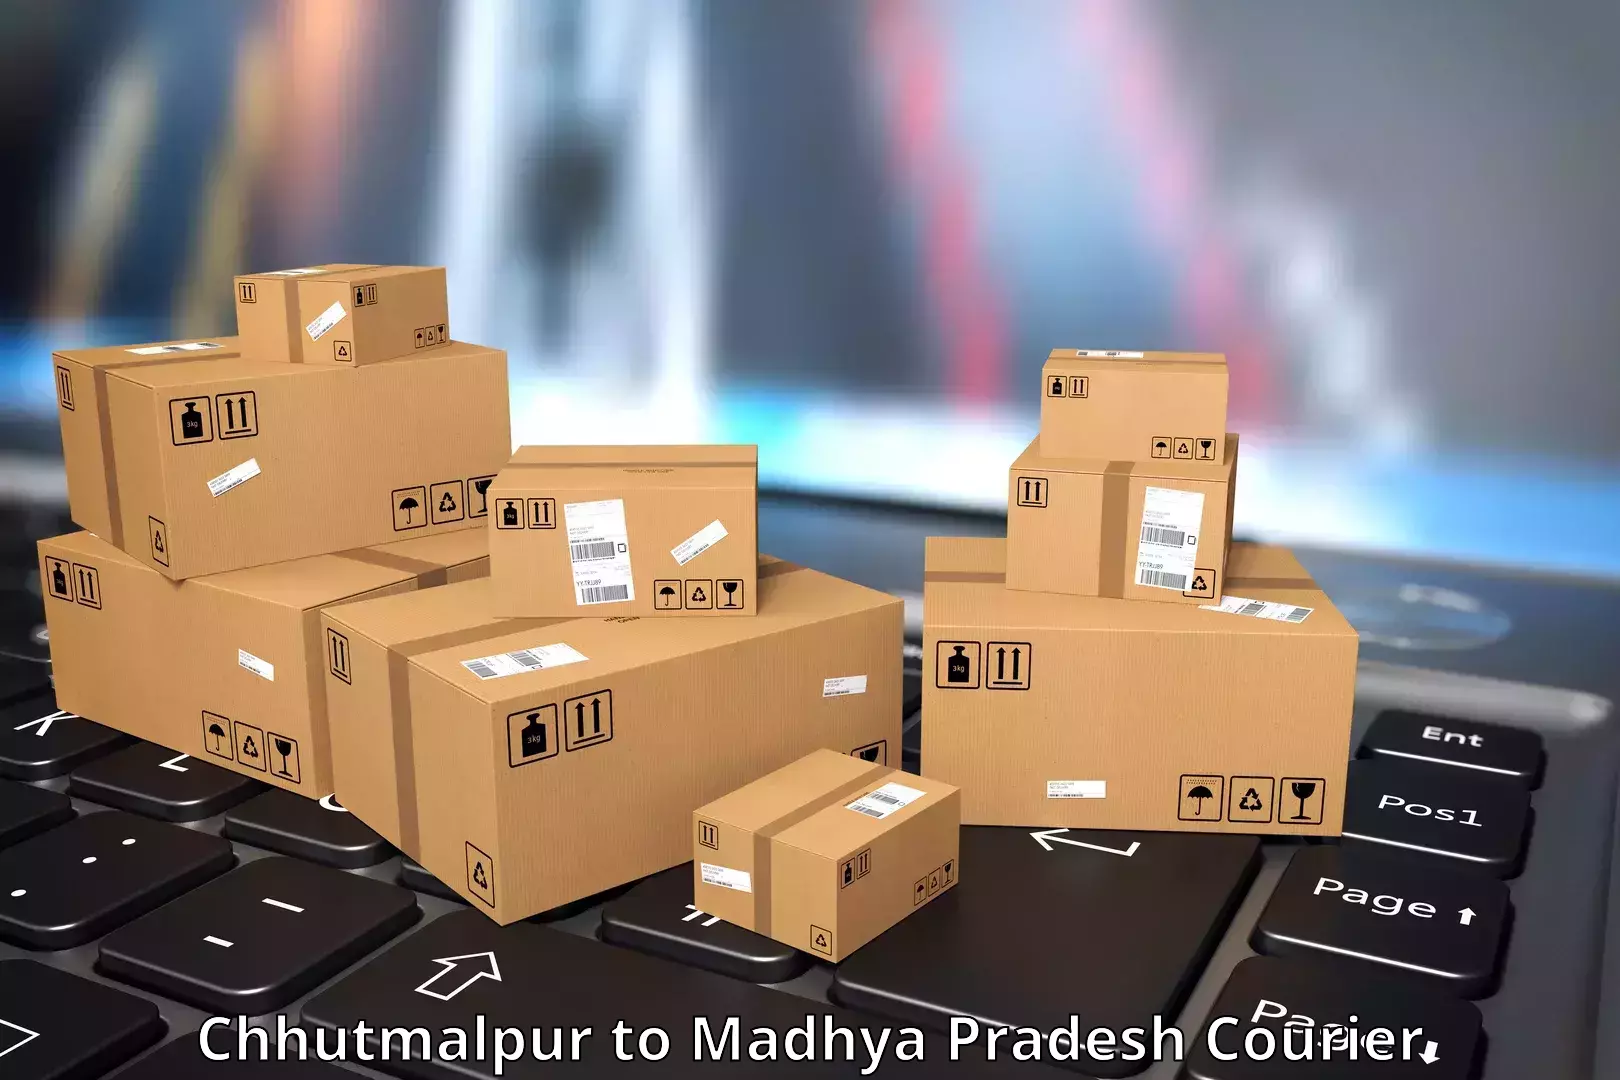 Door-to-door shipment in Chhutmalpur to Manasa